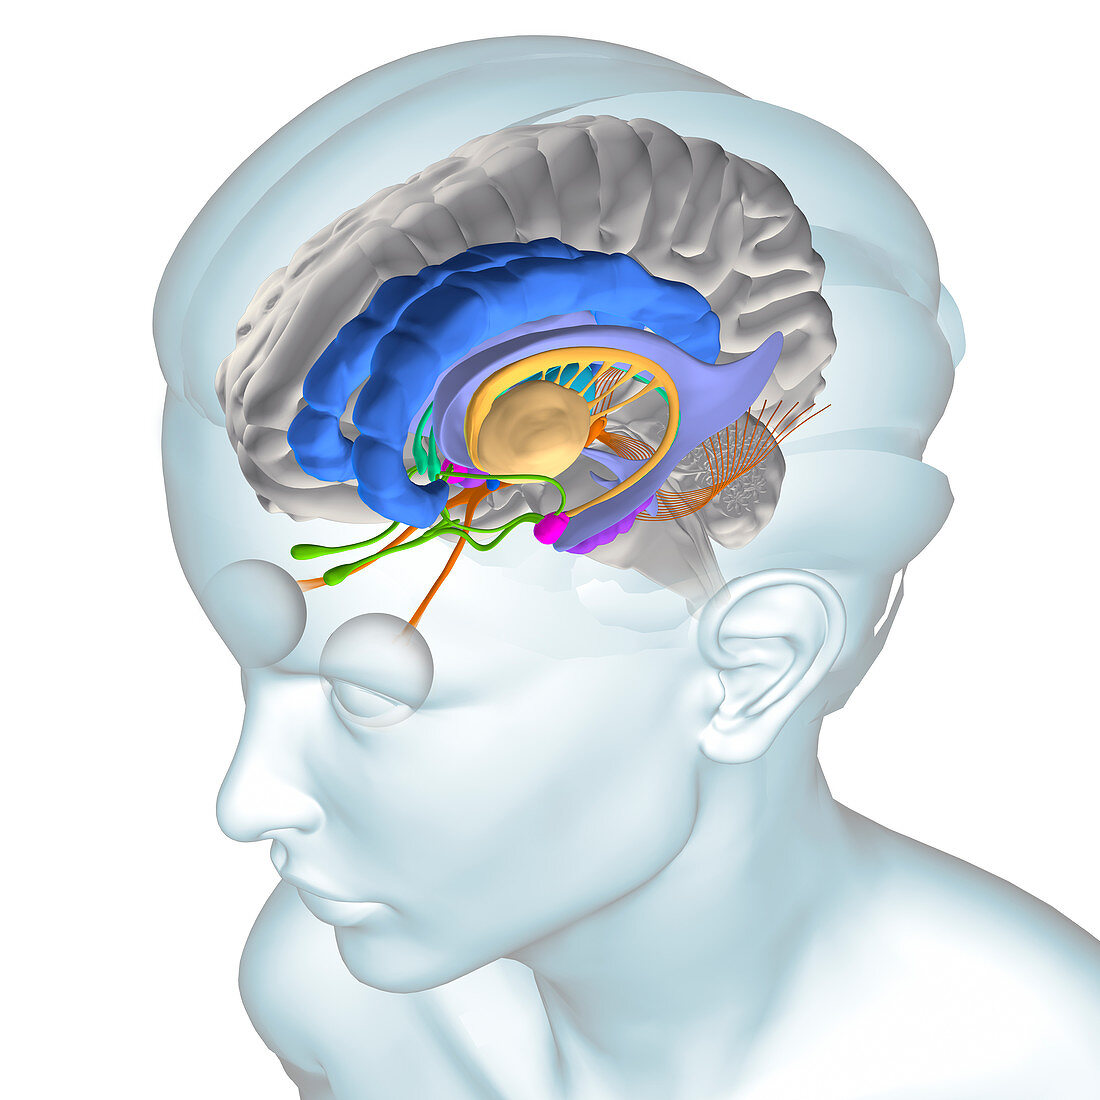 Anatomy Of The Brain